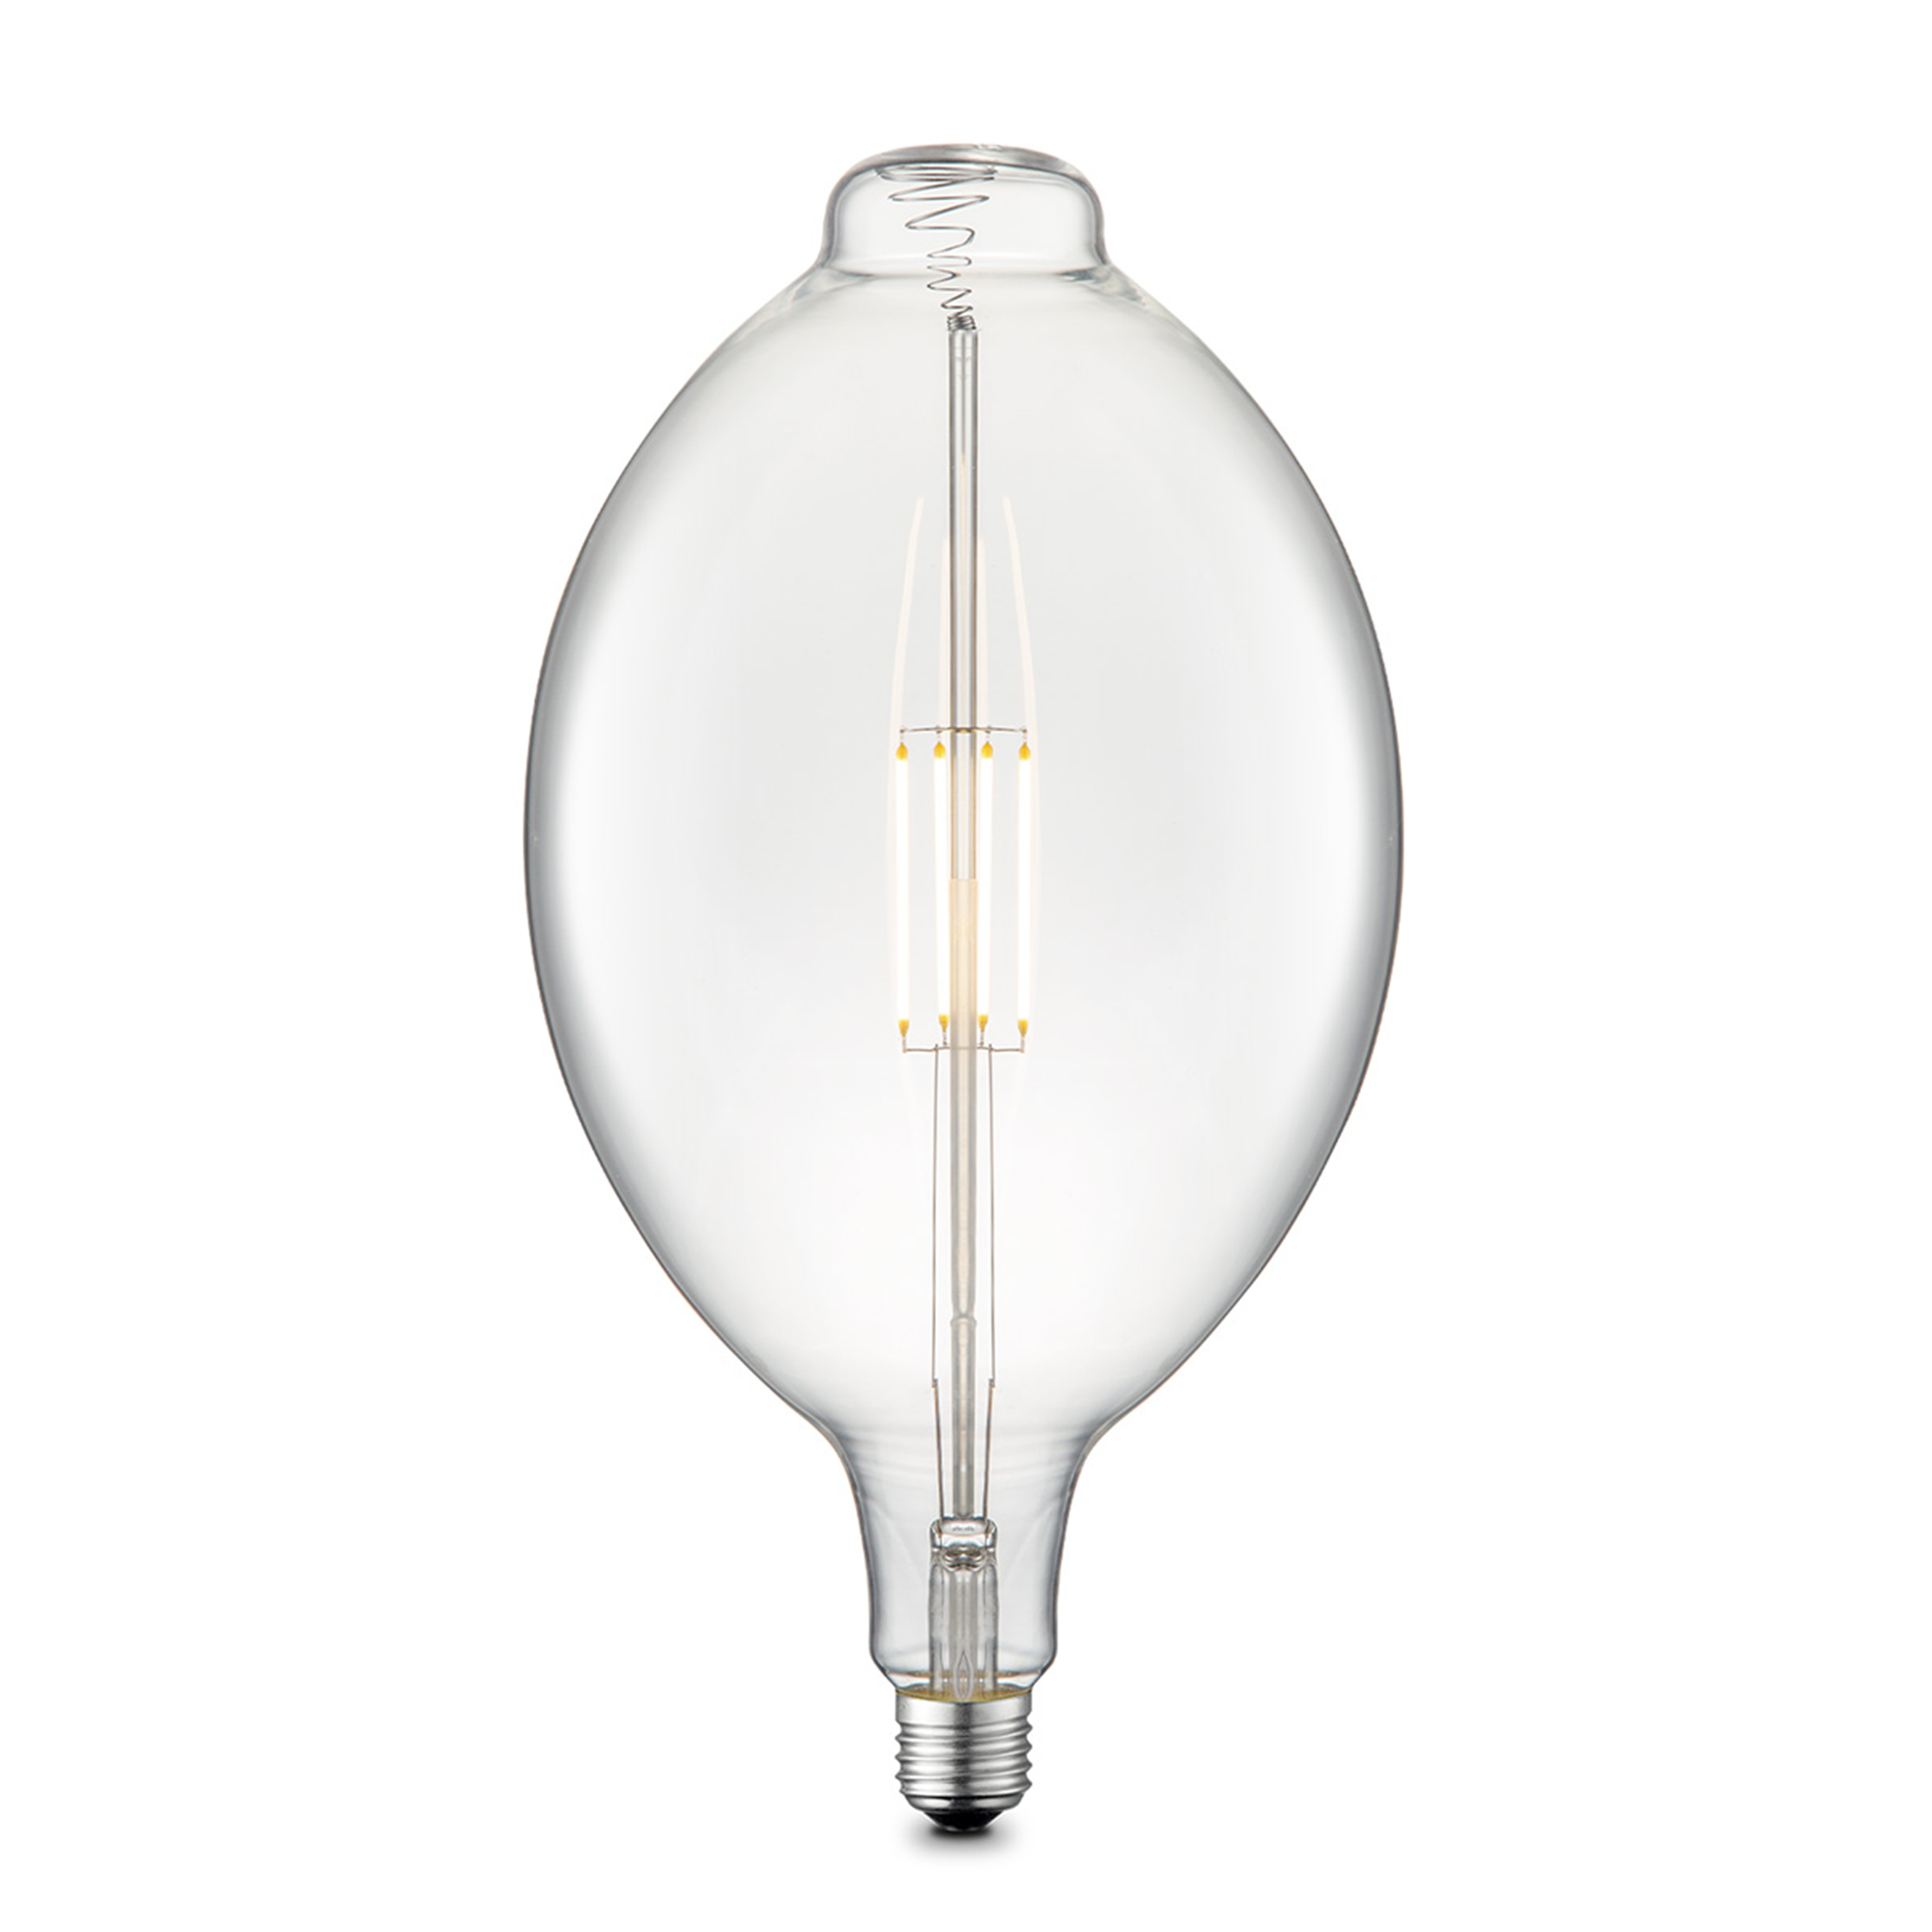 LED-Leuchtmittel 'Carbon E' klar E27 4W 400 lm dimmbar + product picture